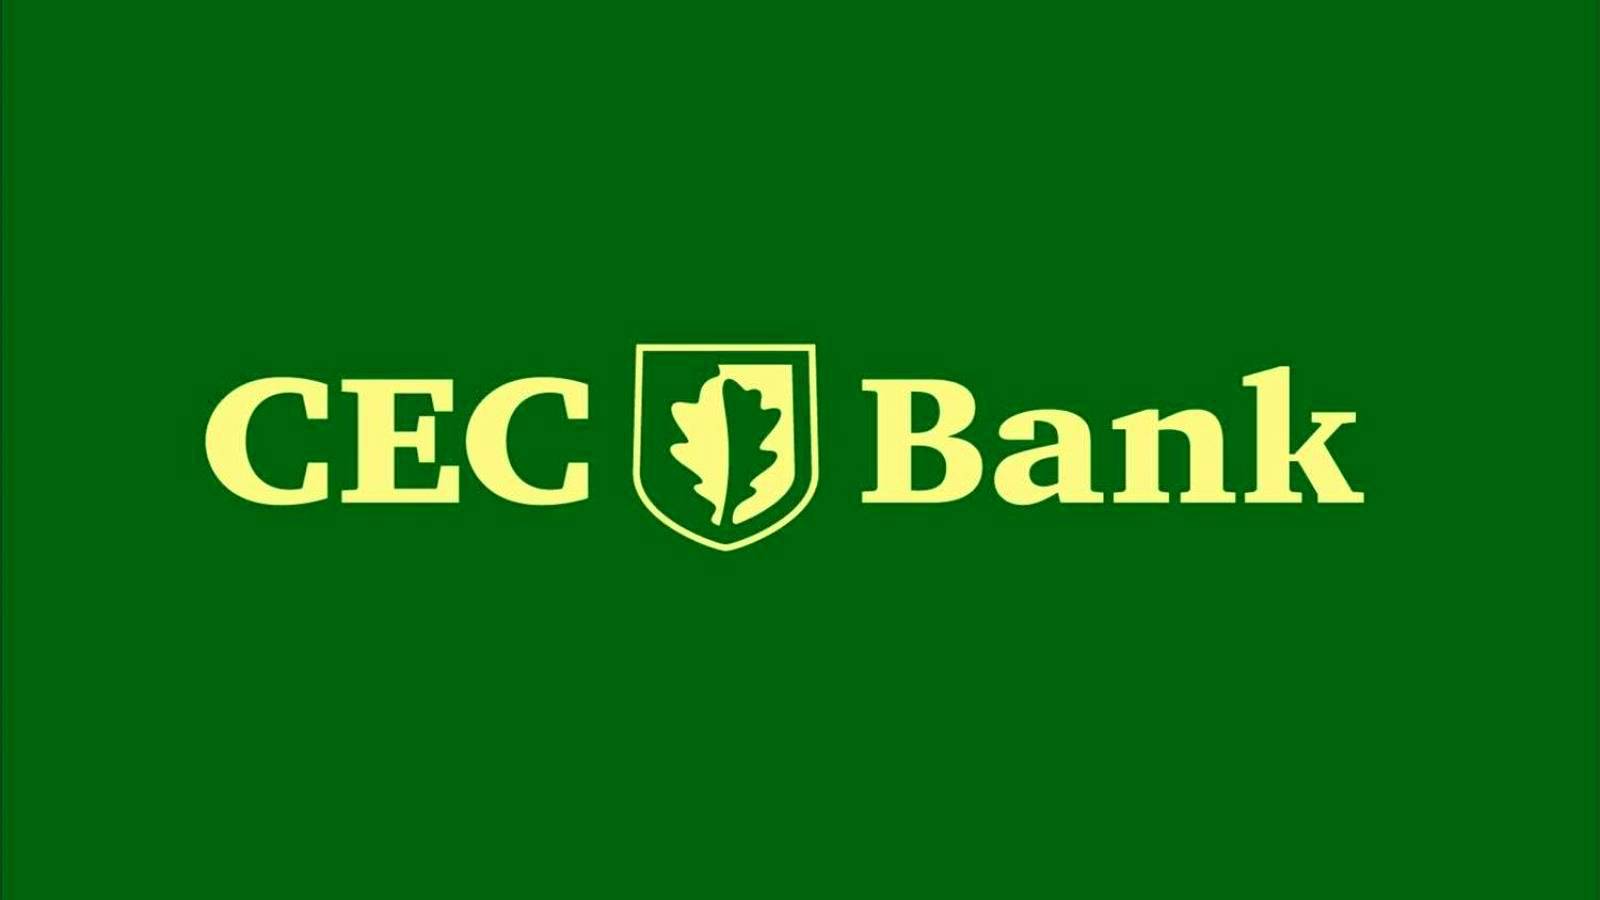 Ouverture de la banque CEC